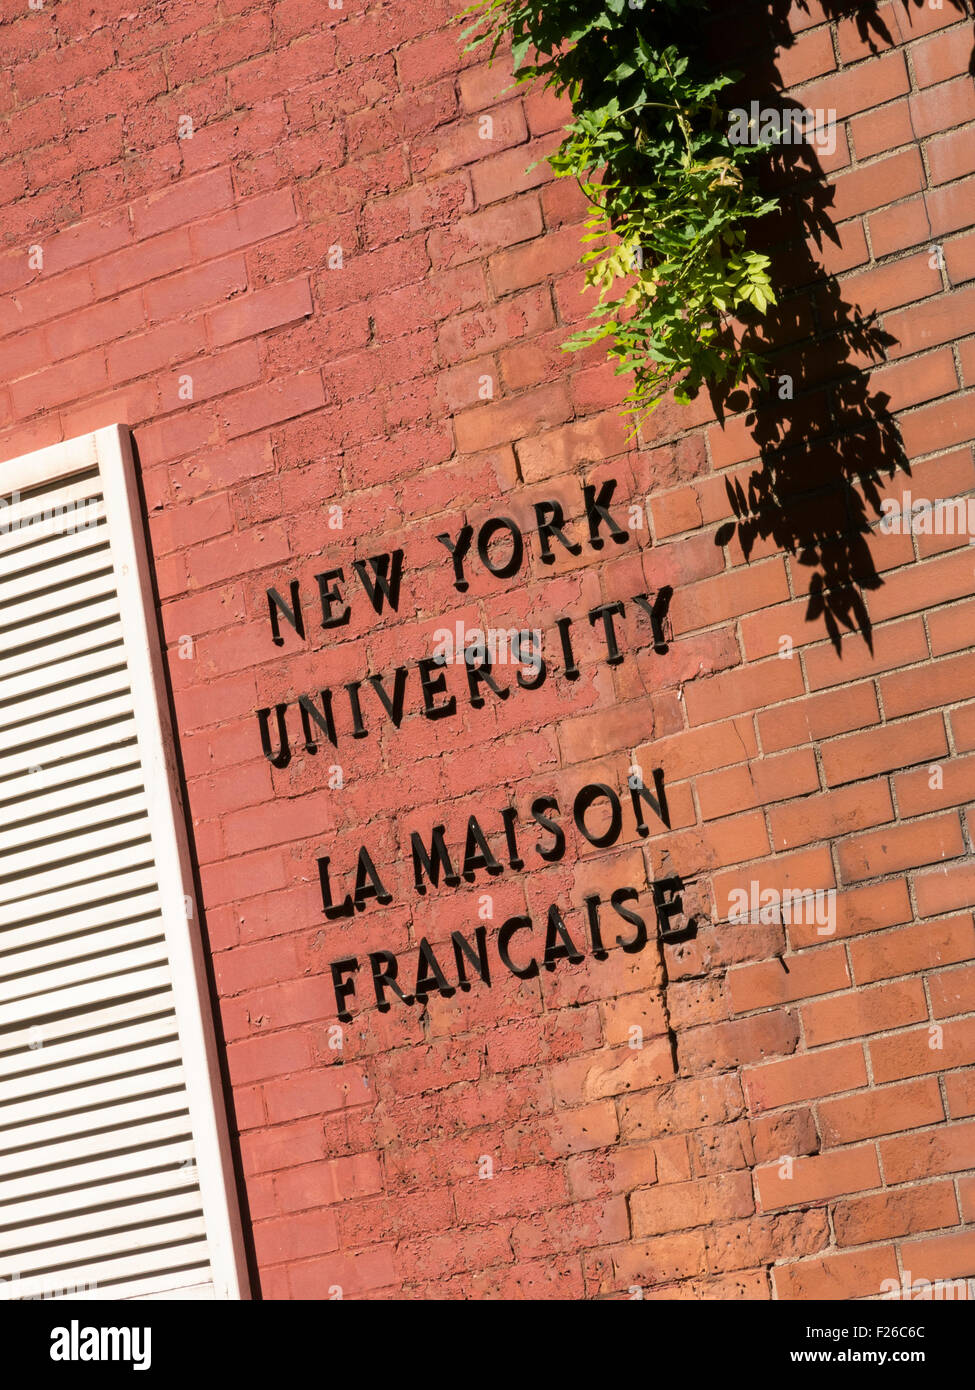 La Maison Francaise Building, New York University, Washington Mews, NYC, USA Stock Photo